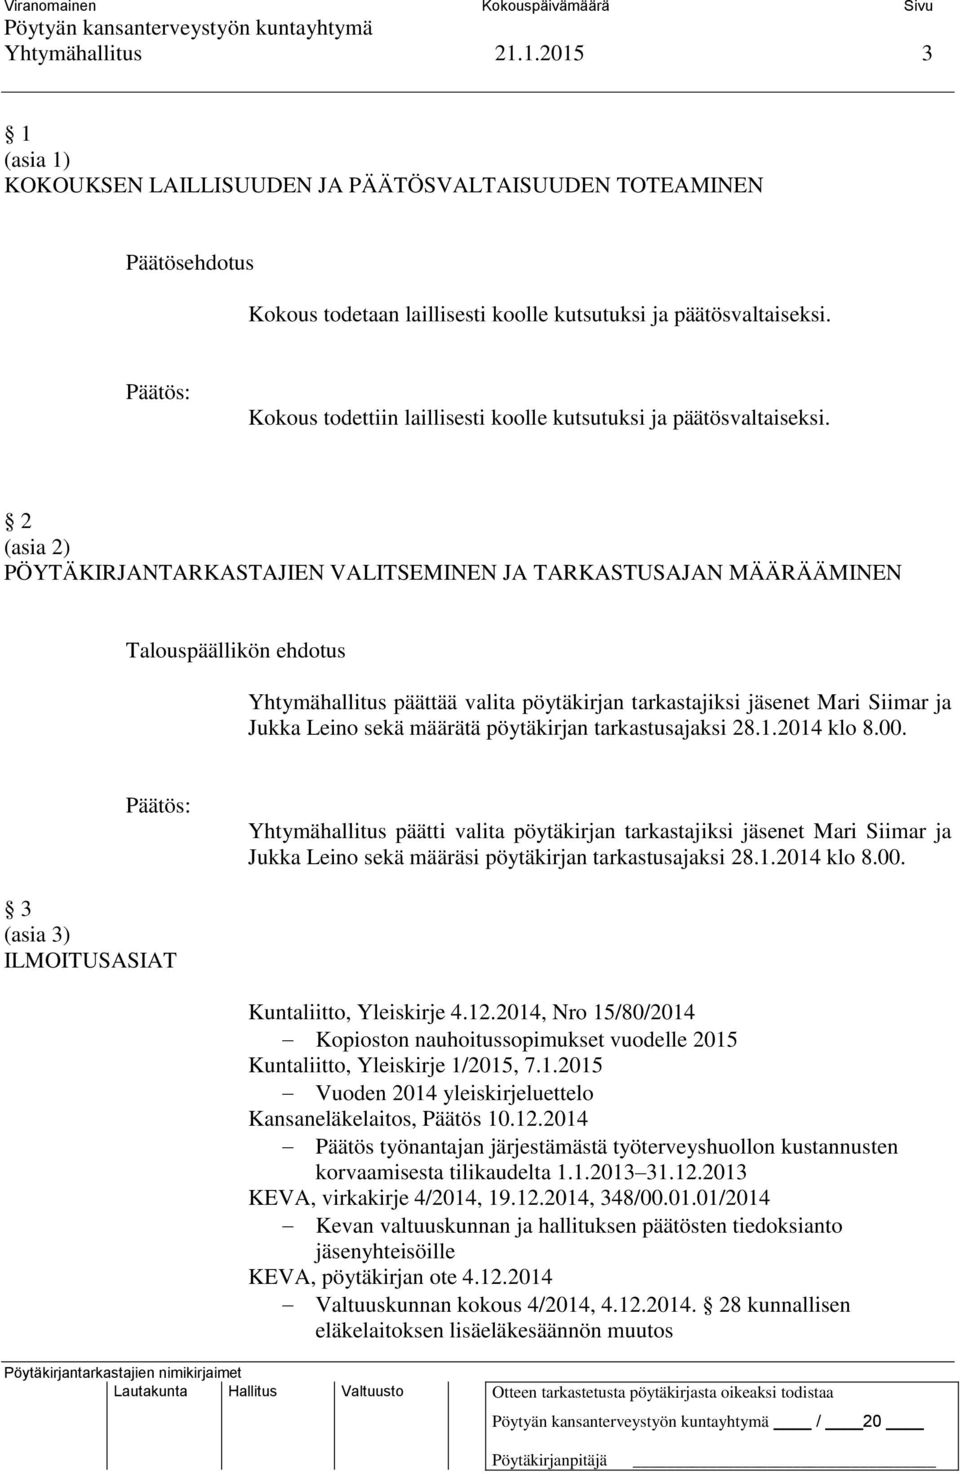 2 (asia 2) PÖYTÄKIRJANTARKASTAJIEN VALITSEMINEN JA TARKASTUSAJAN MÄÄRÄÄMINEN Yhtymähallitus päättää valita pöytäkirjan tarkastajiksi jäsenet Mari Siimar ja Jukka Leino sekä määrätä pöytäkirjan